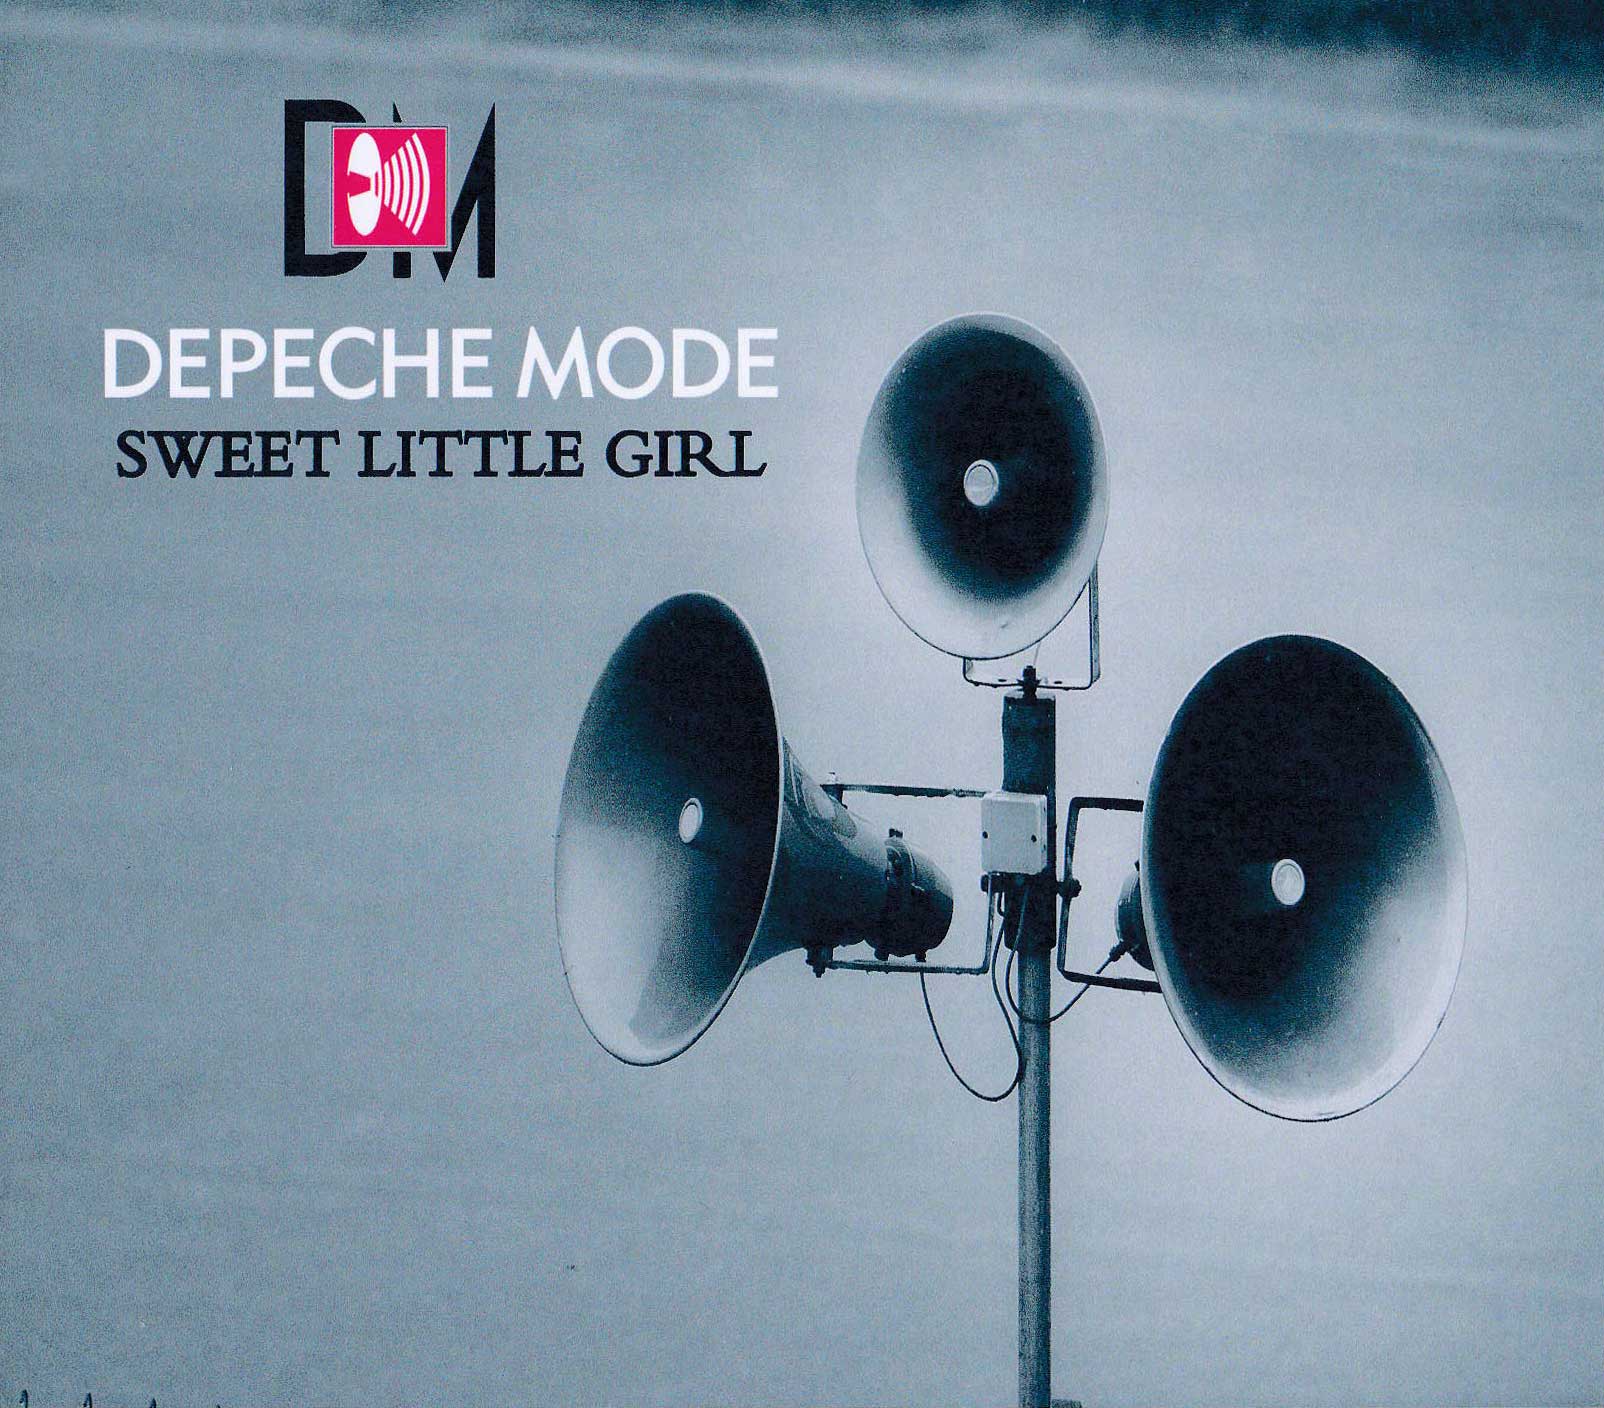 depeche-mode-sweet-little-girl-jpg.15679